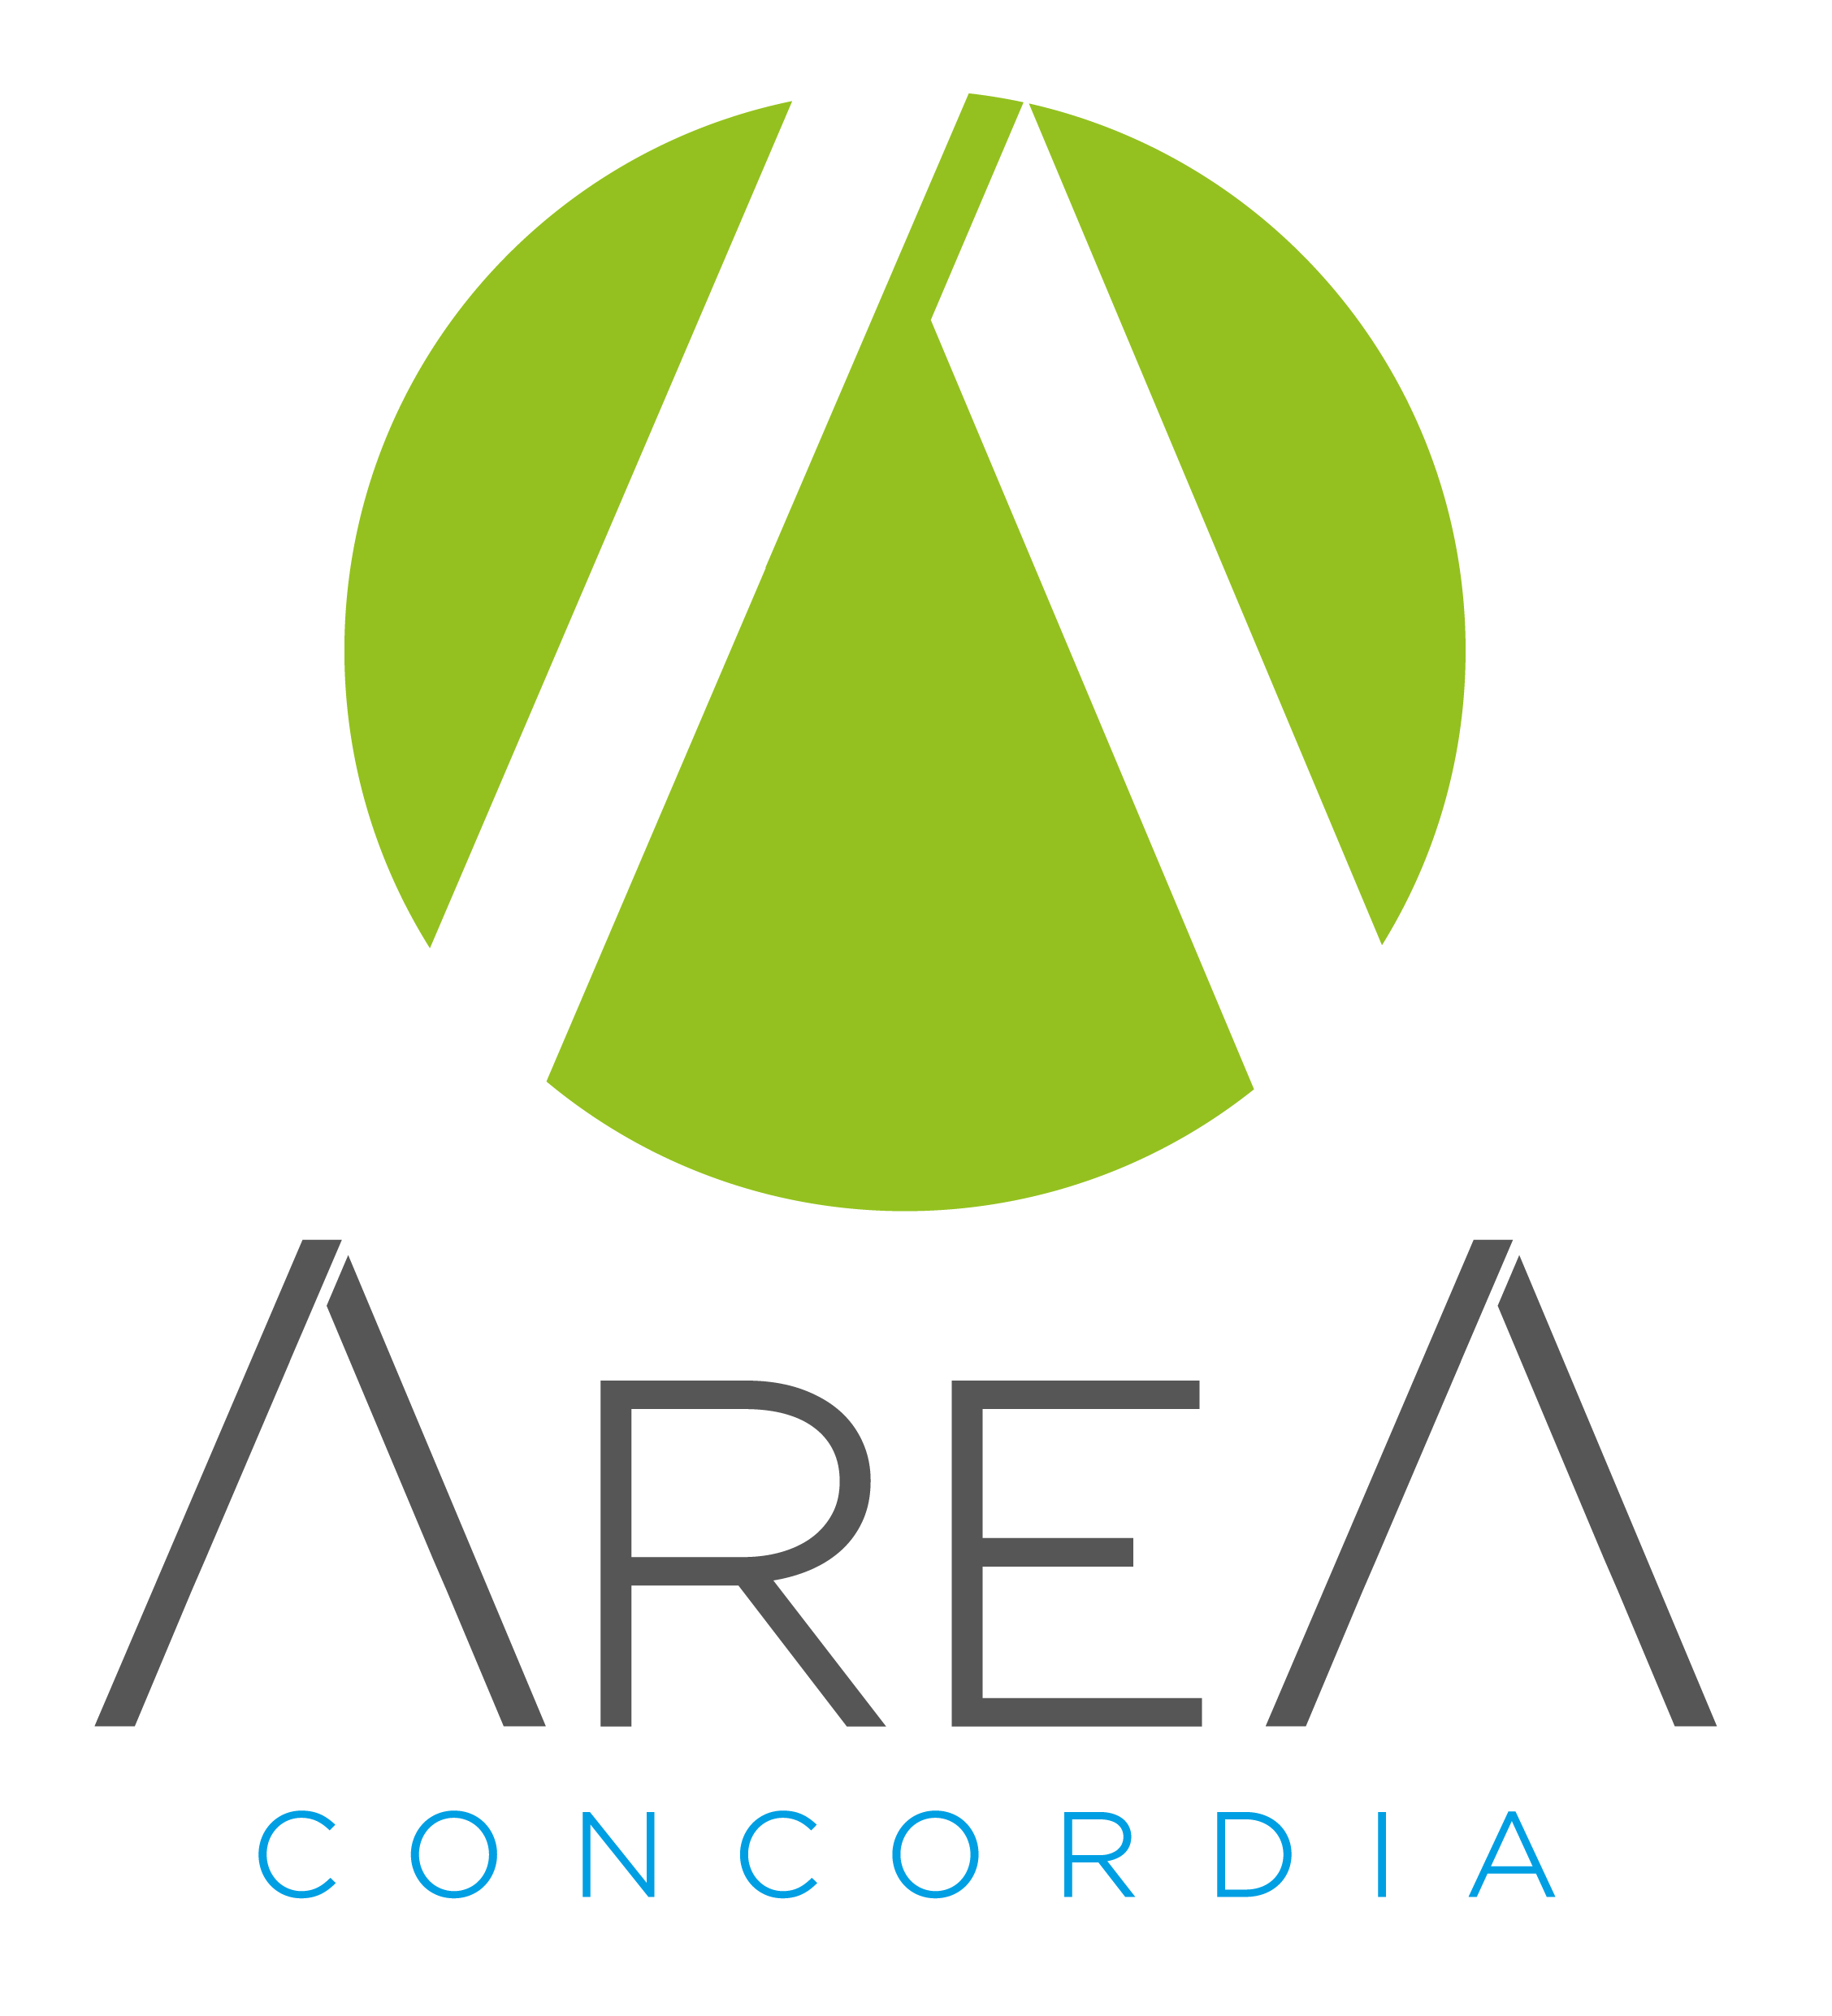 Area Concordia